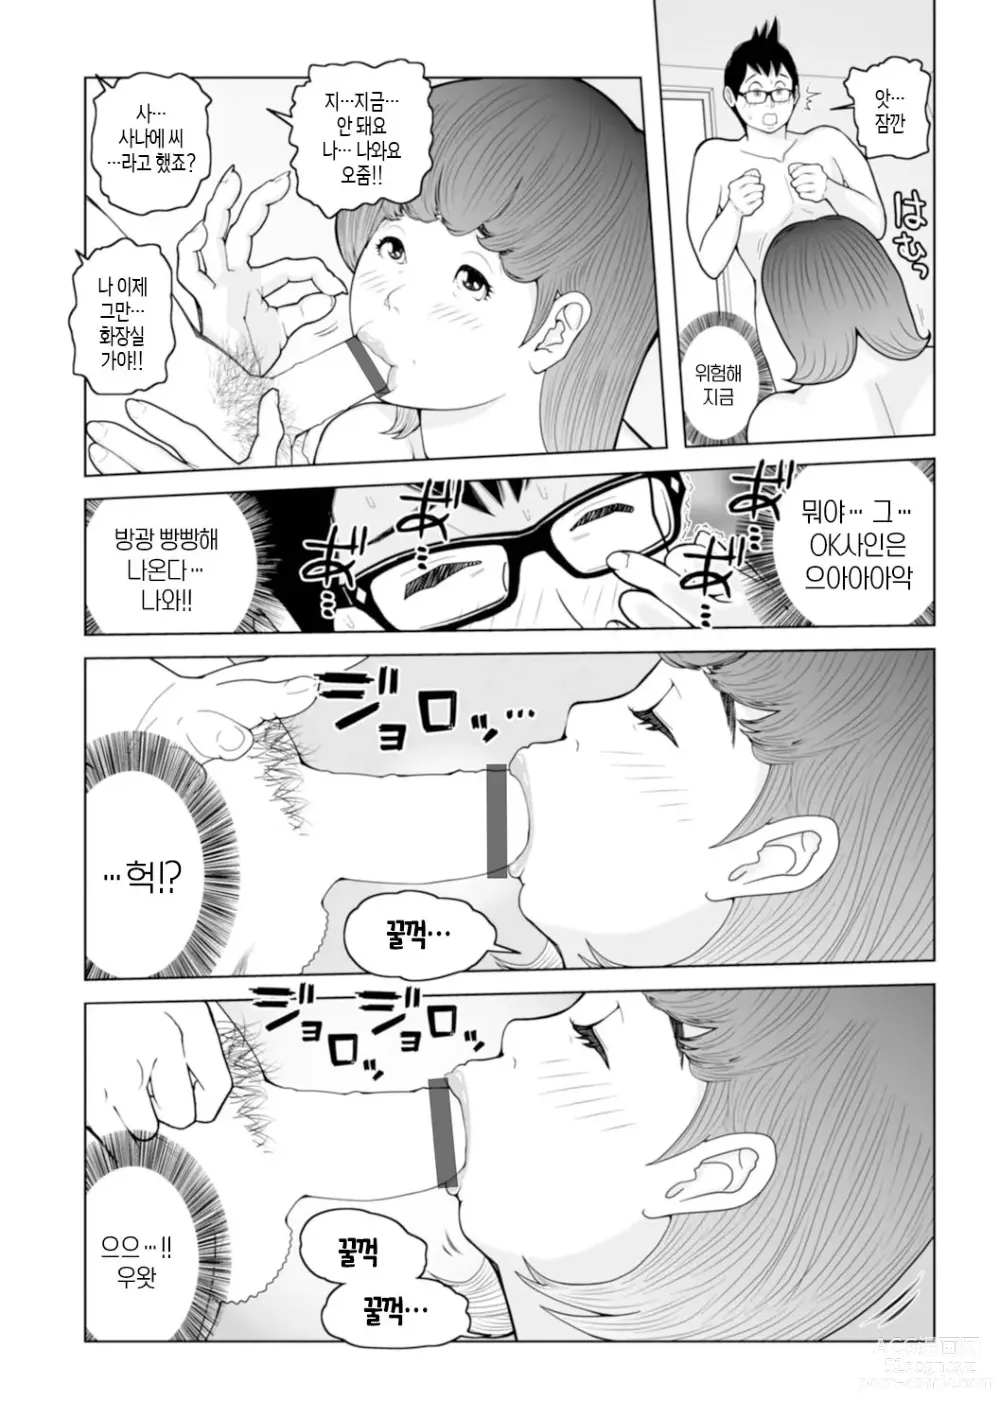 Page 28 of manga 엄마들... 임신시켜도 돼!? 제1권 중 일부